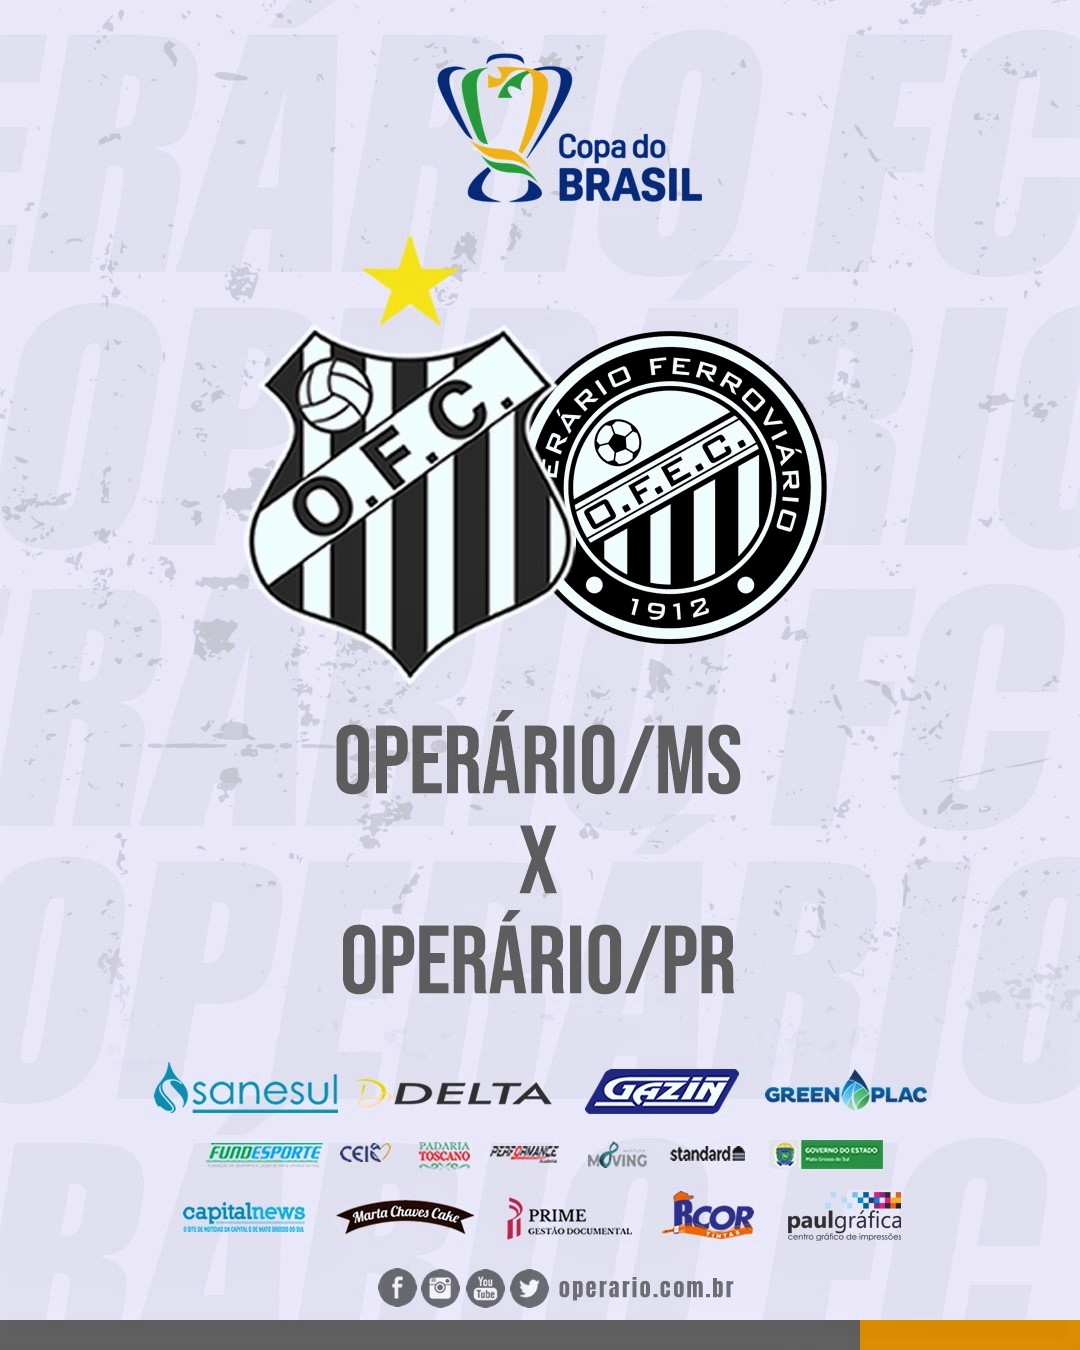 SE Palmeiras on X: ✓ Copa do Brasil ✓ Brasileirão